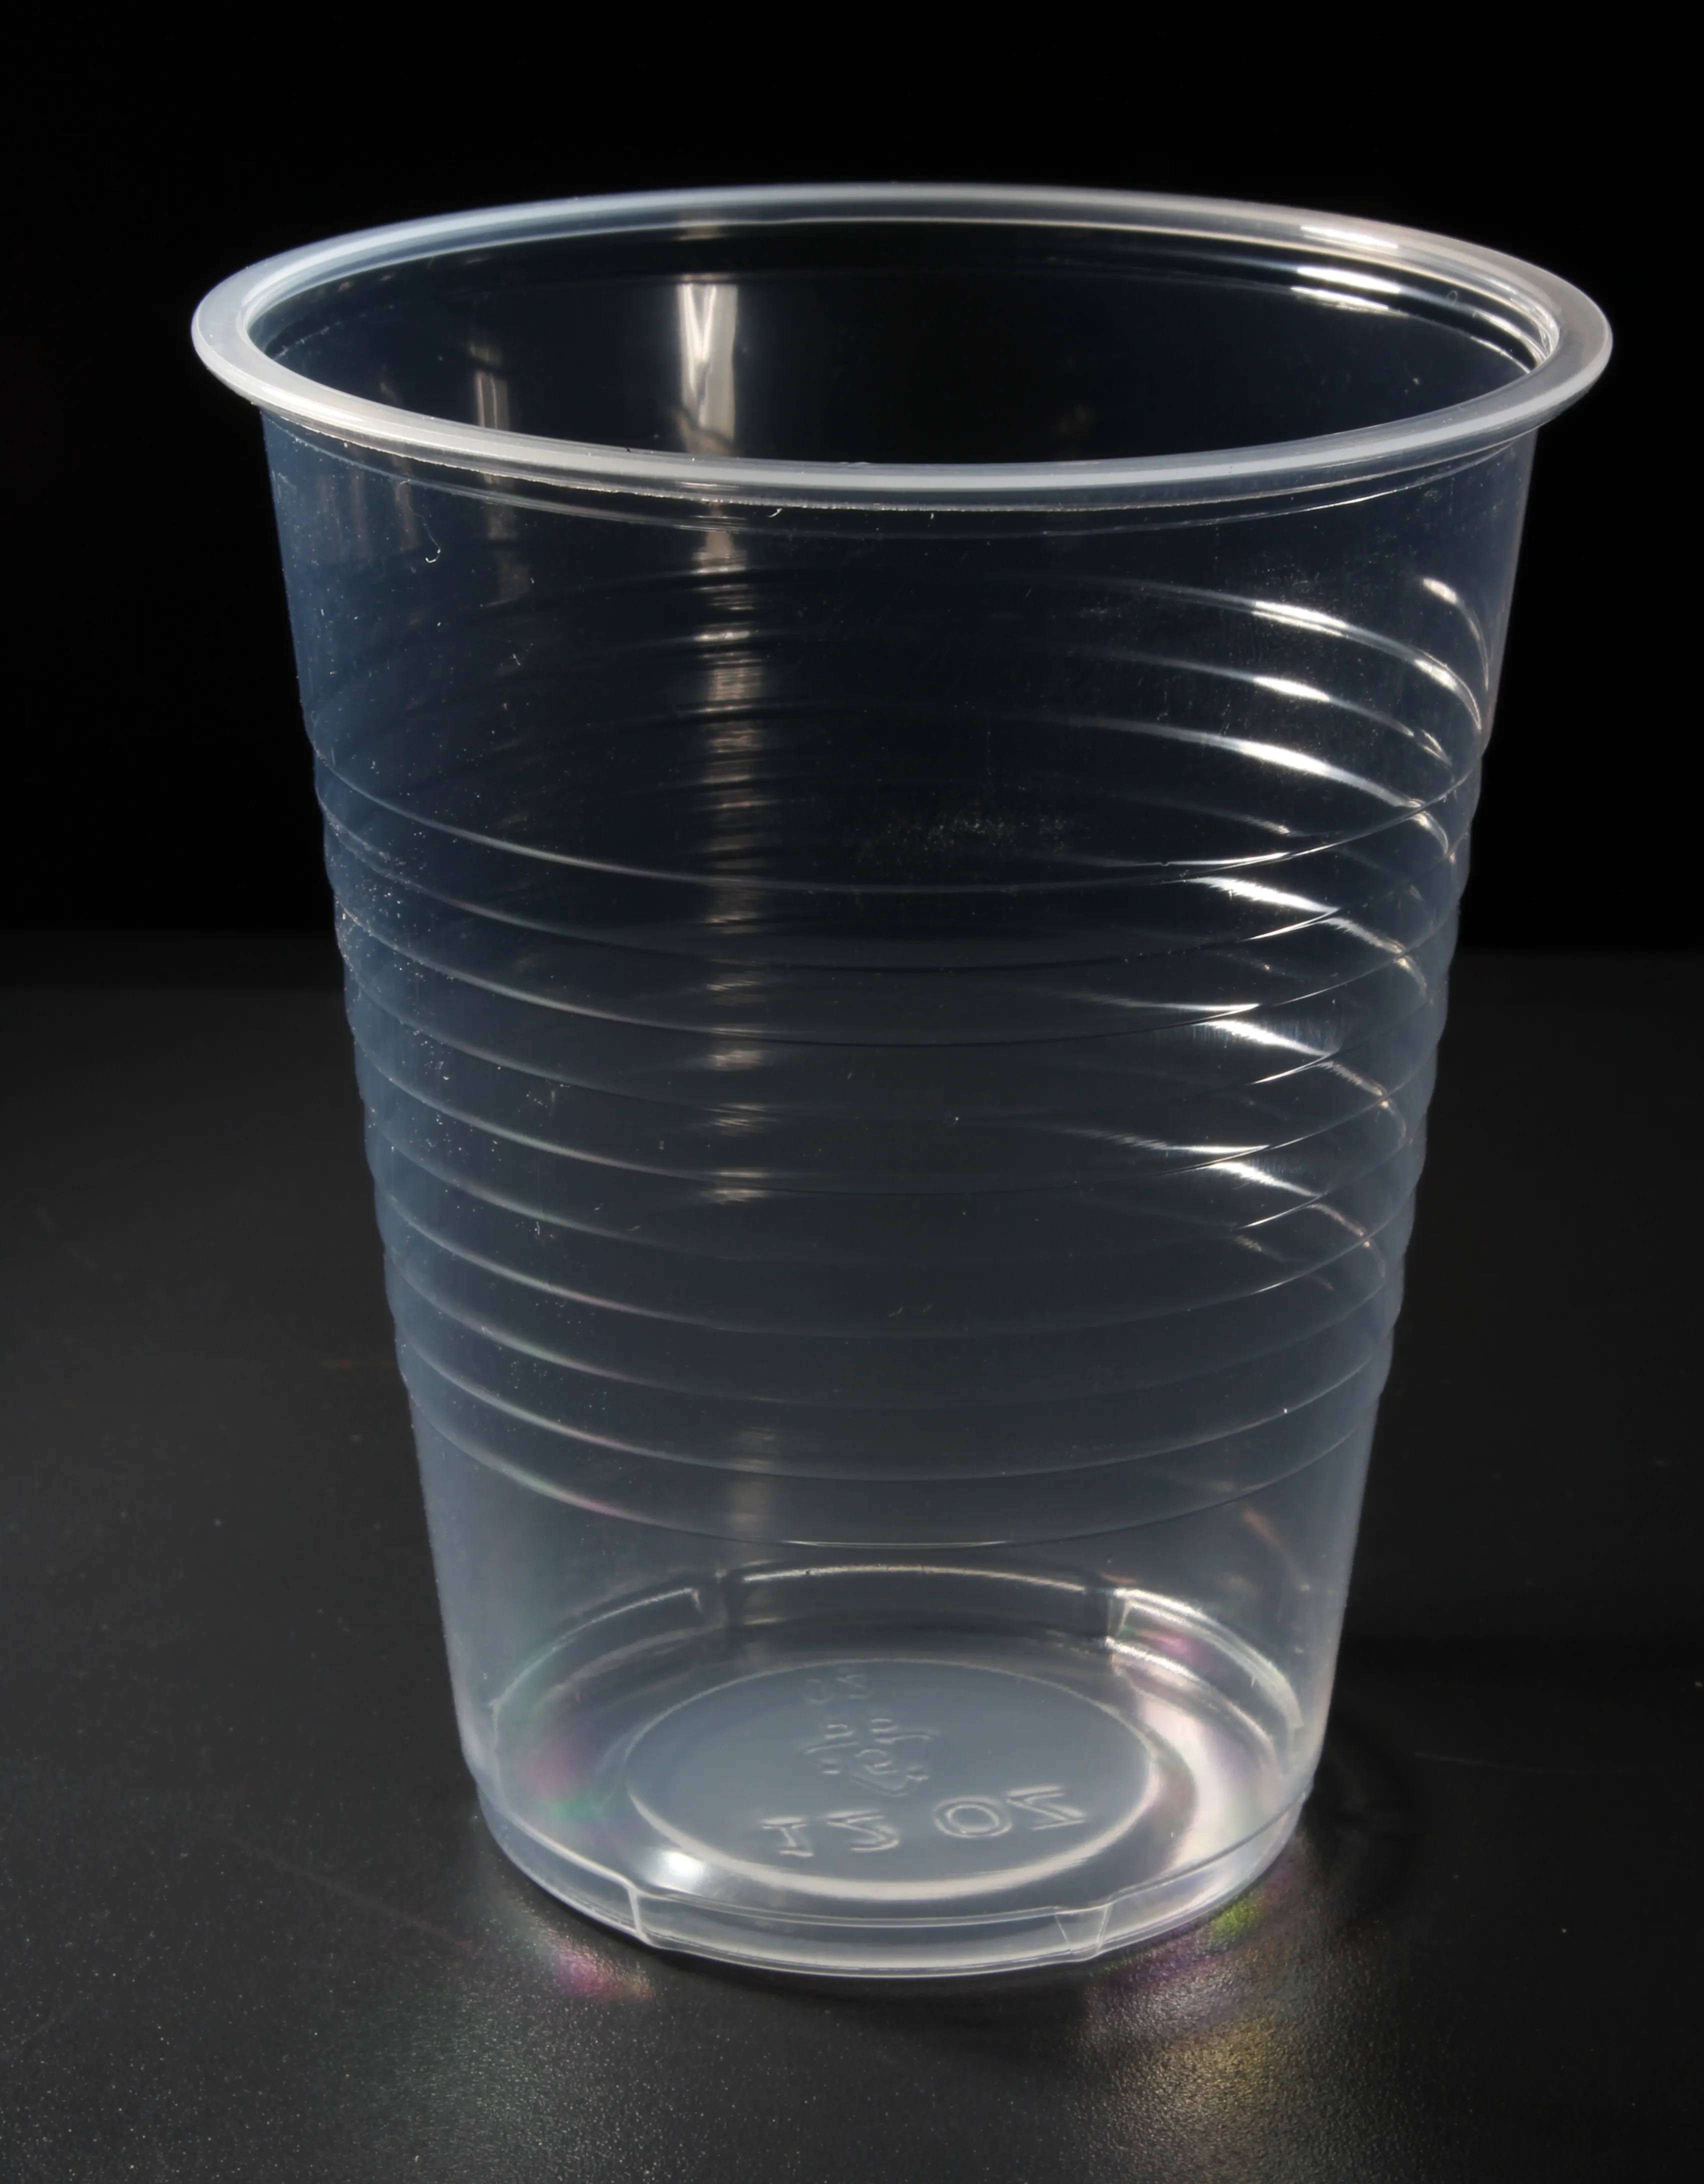 Vaso de plástico desechable de 7 onzas con un diámetro de 62 y un peso de 1,4 g/taza. El fabricante suministra directamente tazas transparentes